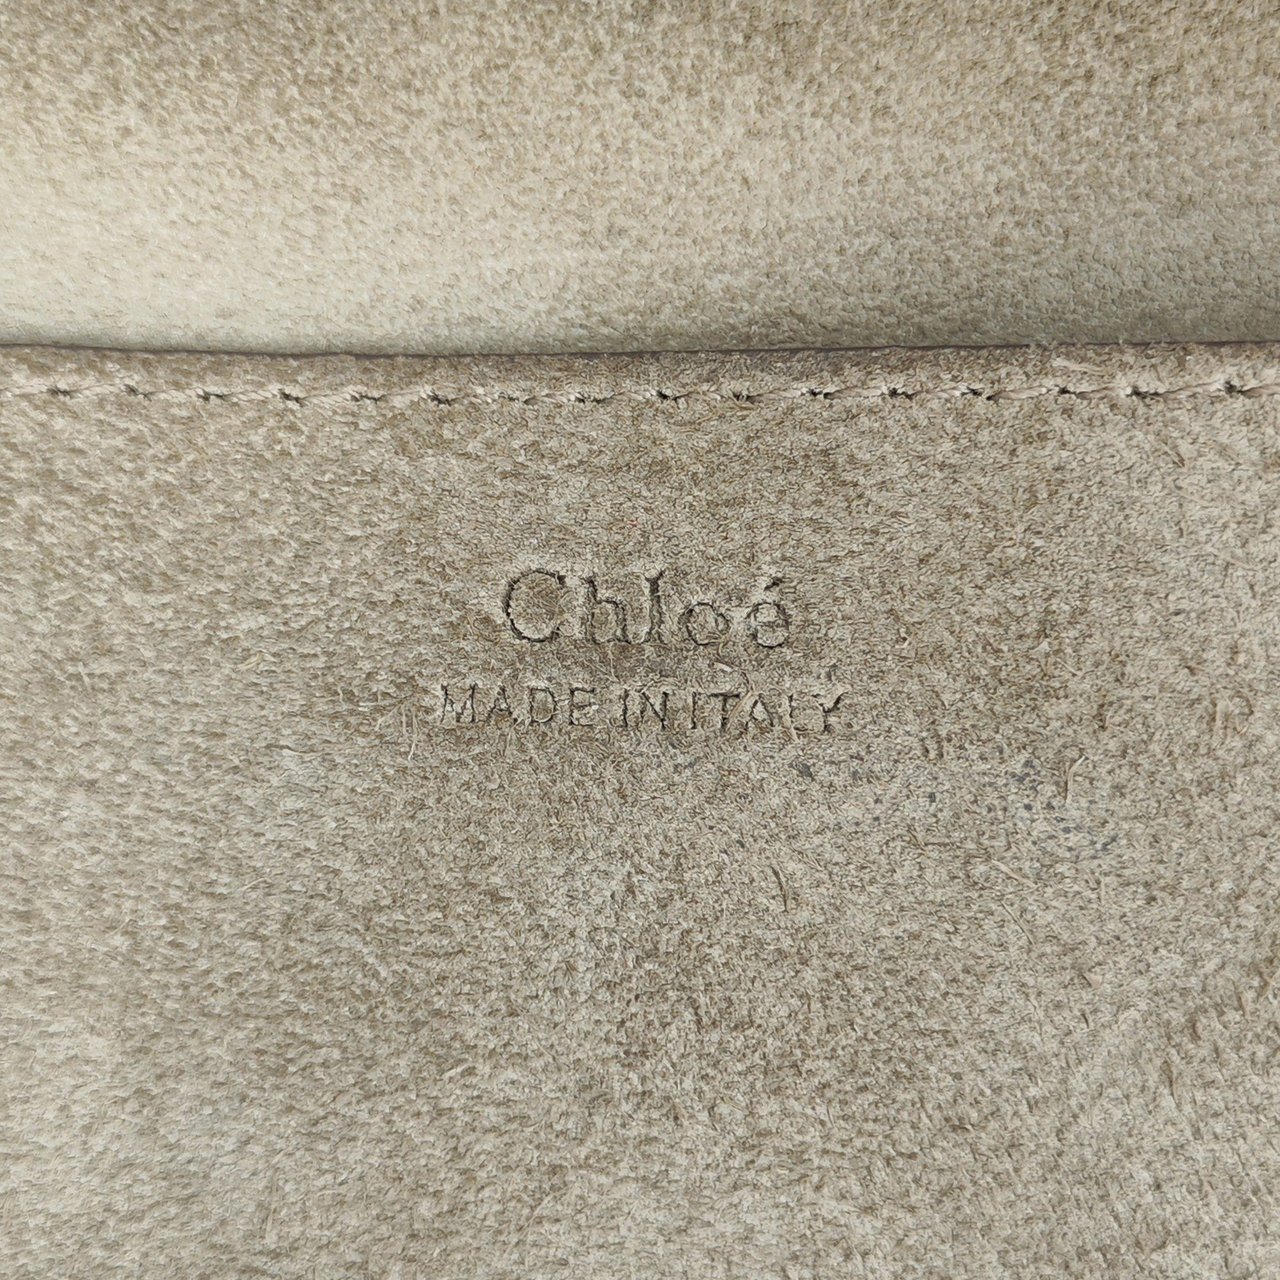 Chloé Drew Bijou Studded Leather Crossbody Bag Grijs